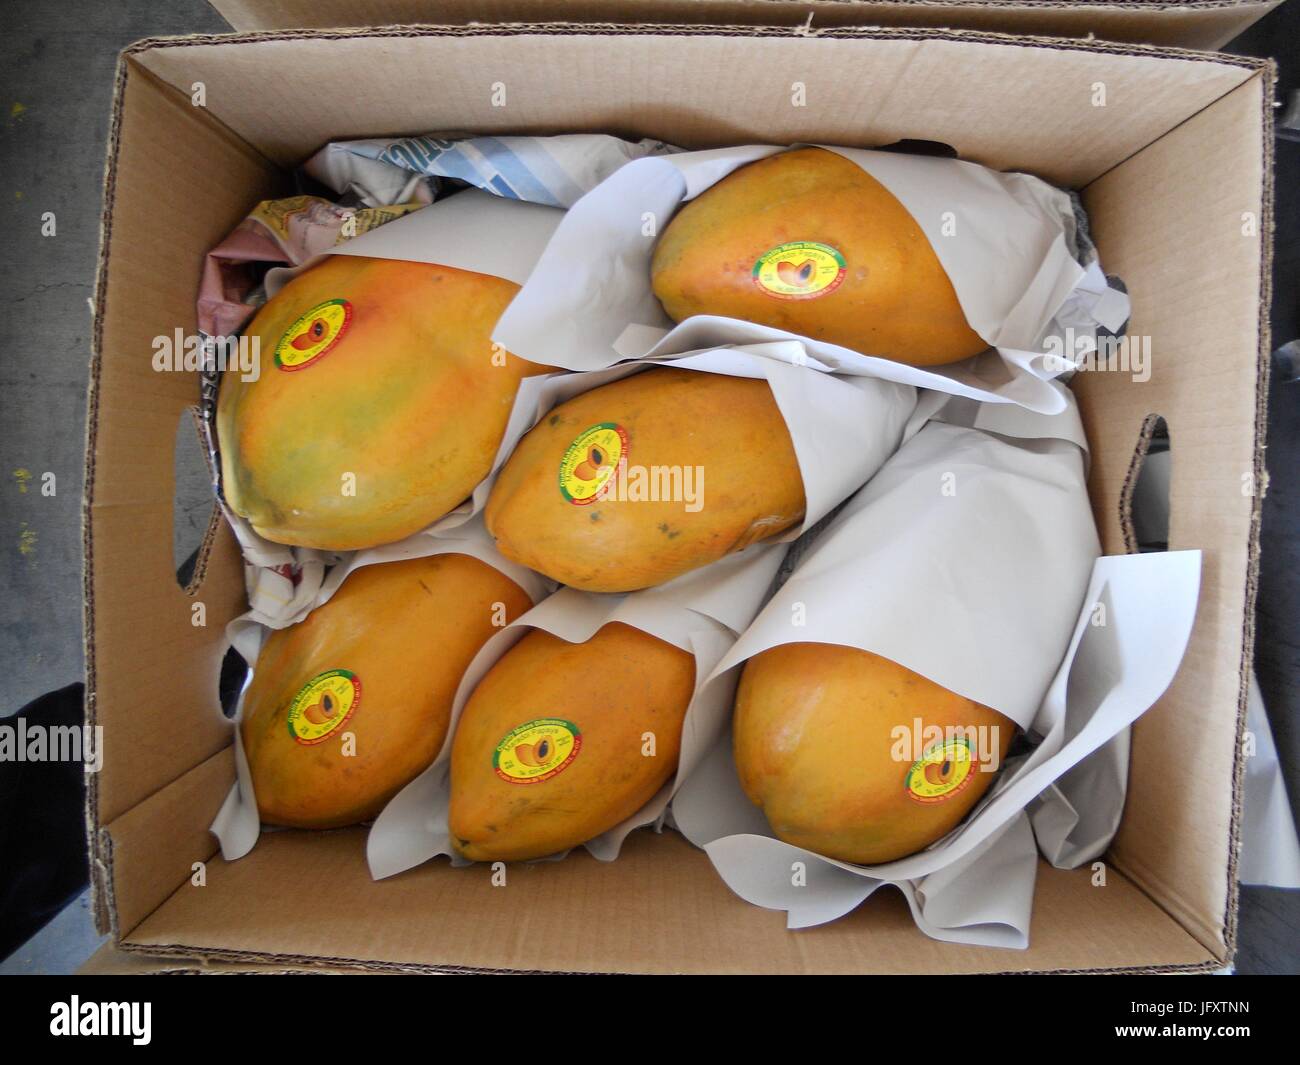 Stati Uniti Food and Drug Administration funzionari ispezionare messicana importate papaya arrivando all'Otay Mesa porto di entrata 14 agosto 2011 a San Diego, California. (Foto di FDA foto via Planetpix) Foto Stock